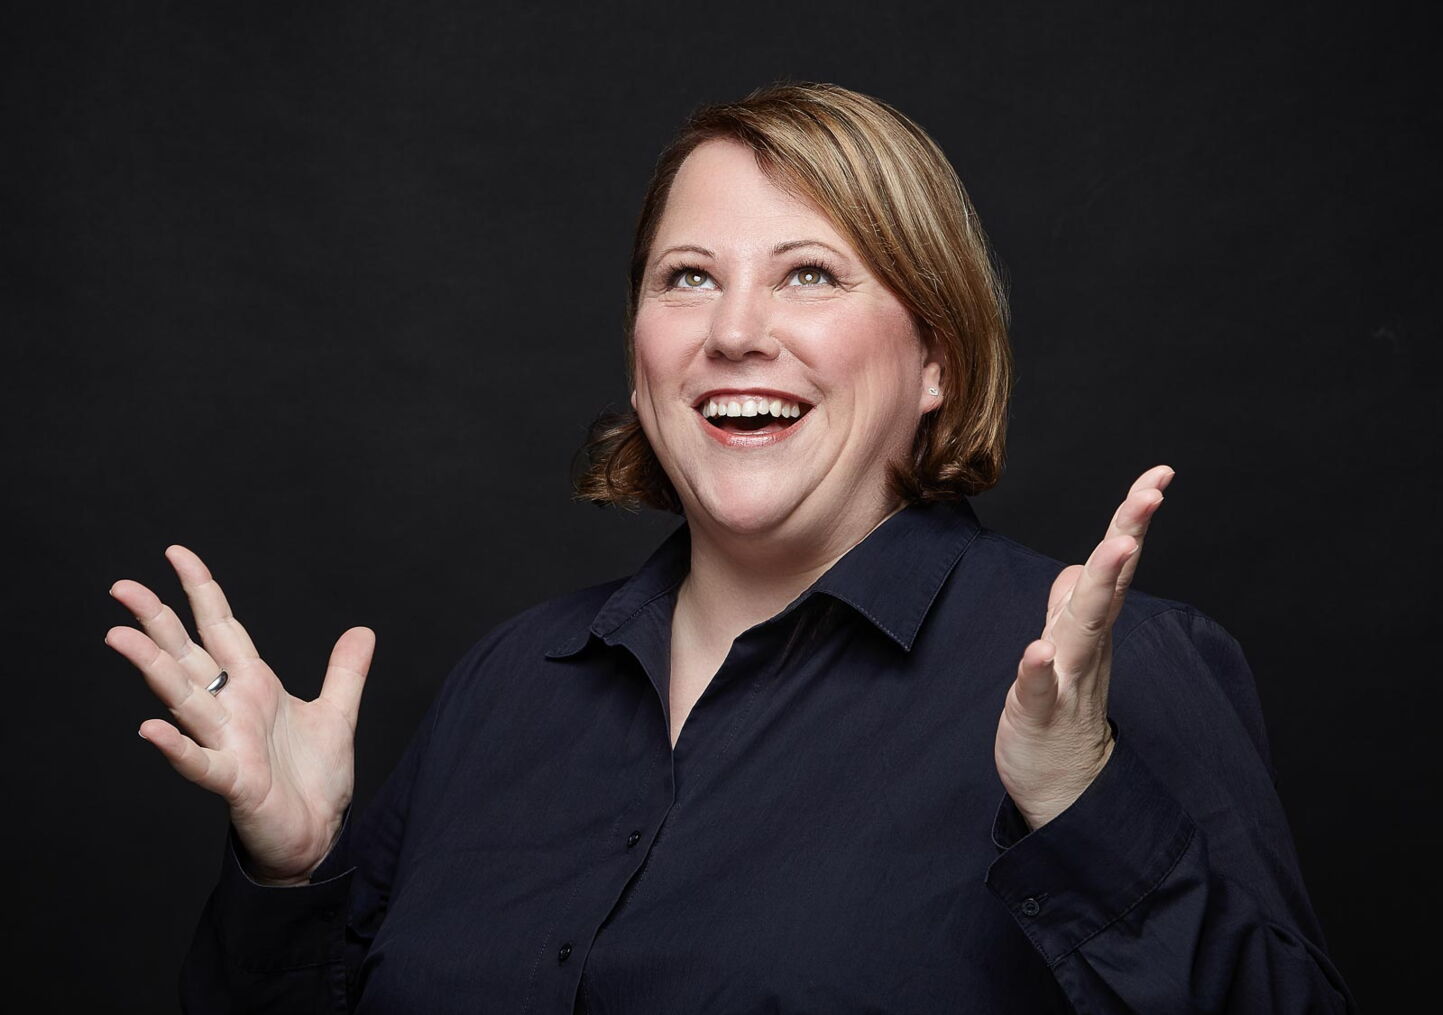 Businessfotografie: Frau in dunkelblauem Hemd vor schwarzem Hintergrund mit freudigem Ausdruck